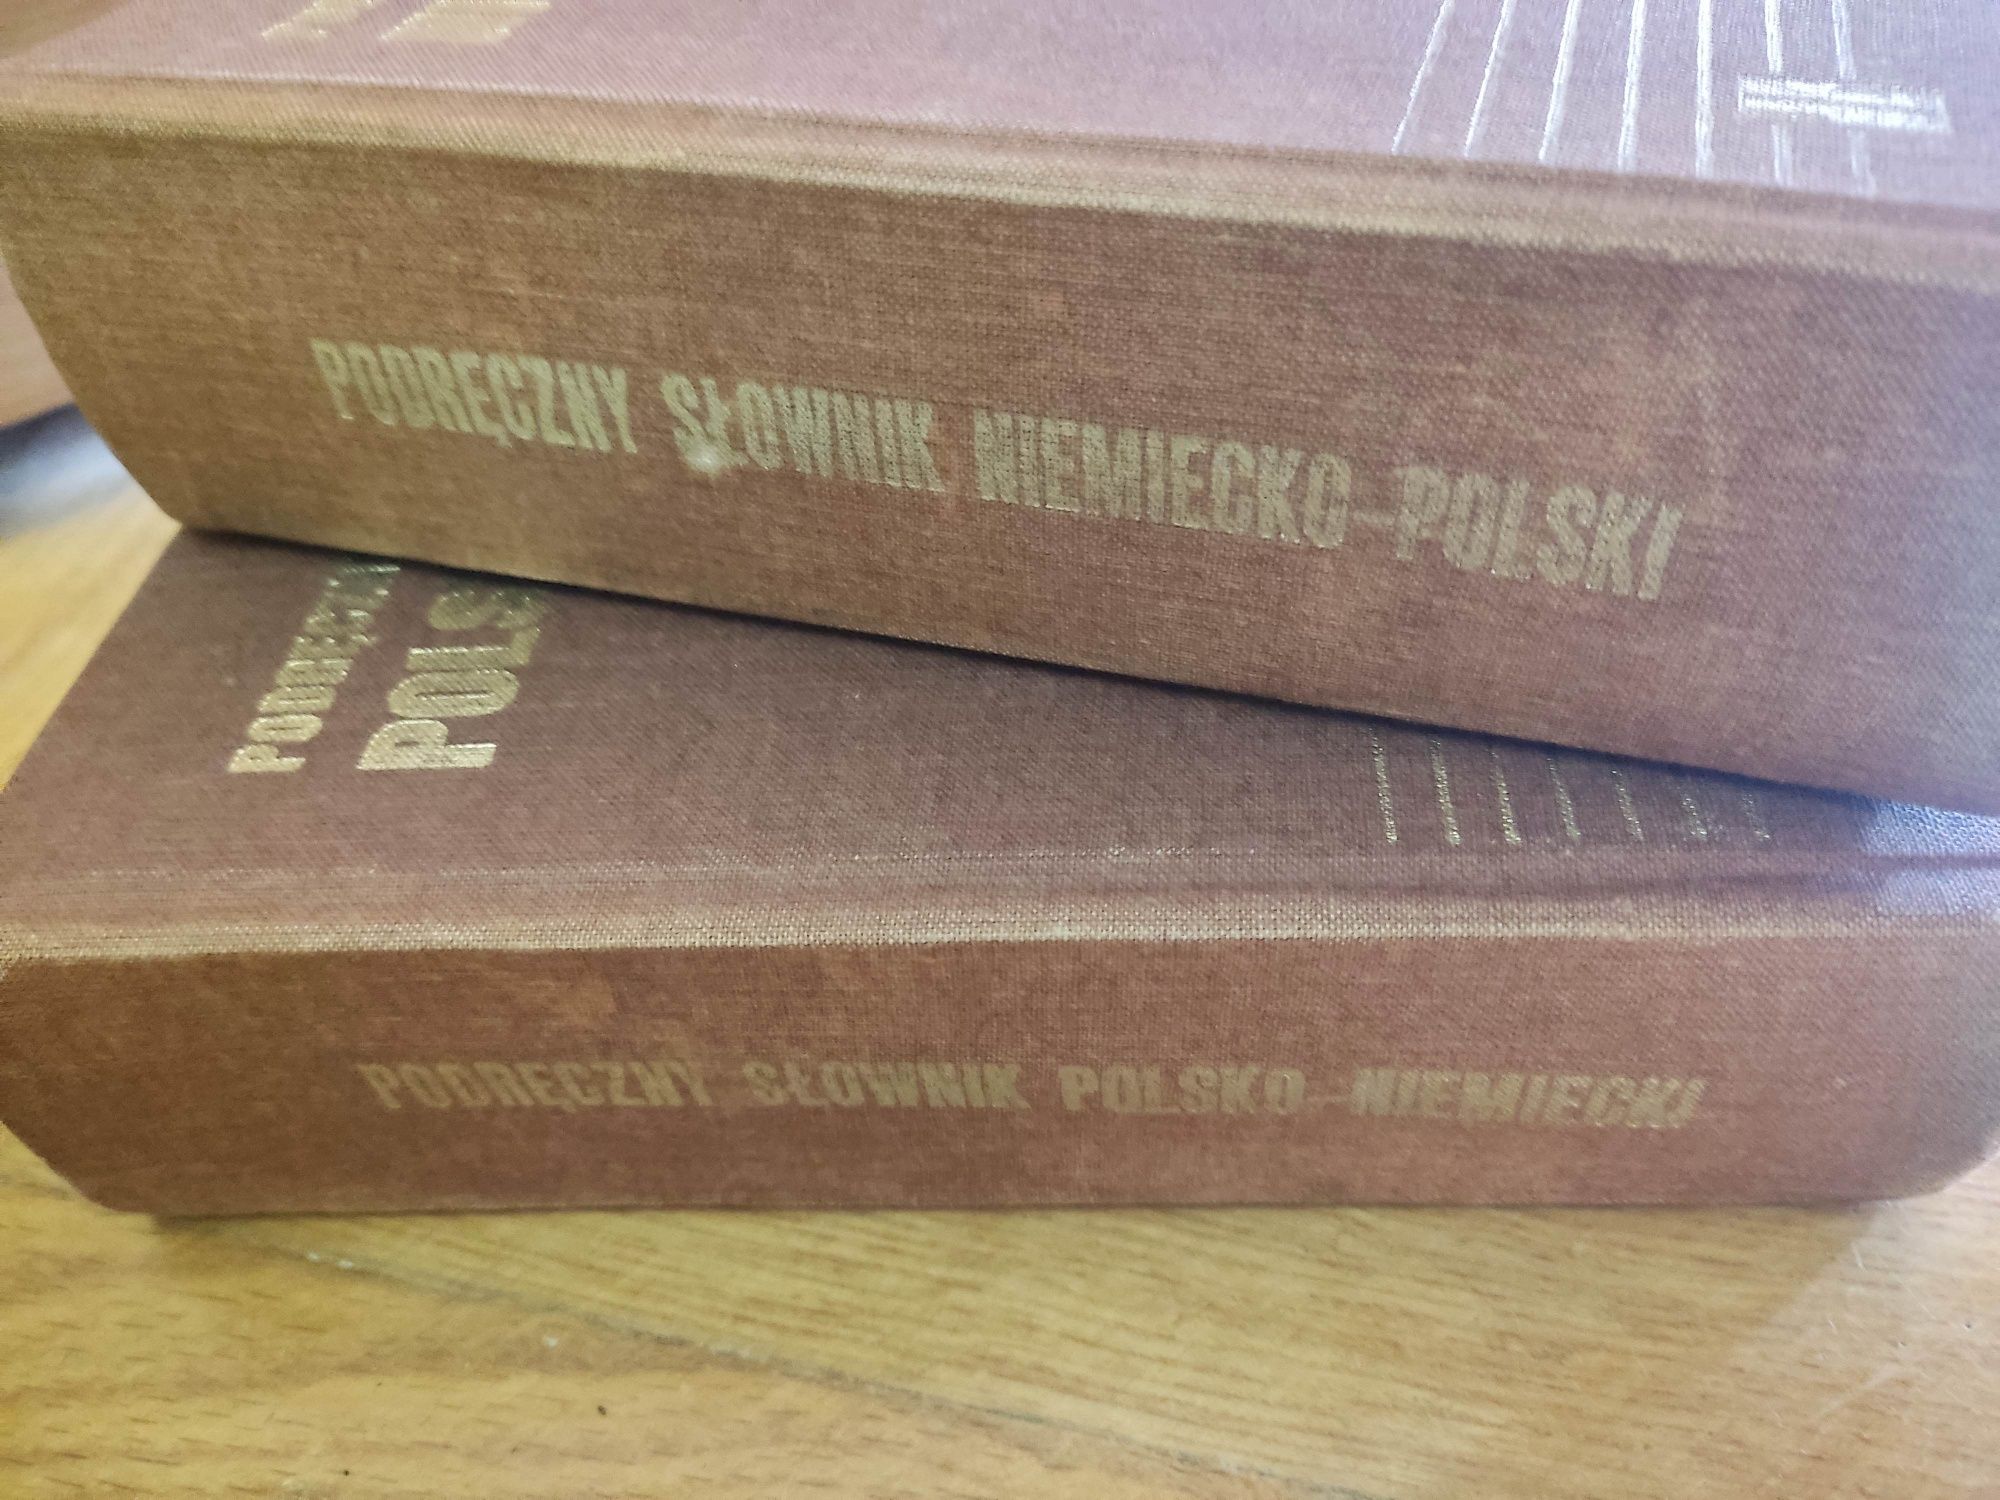 Podręczny słownik niemiecko- polski PW 1990 dwa tomy